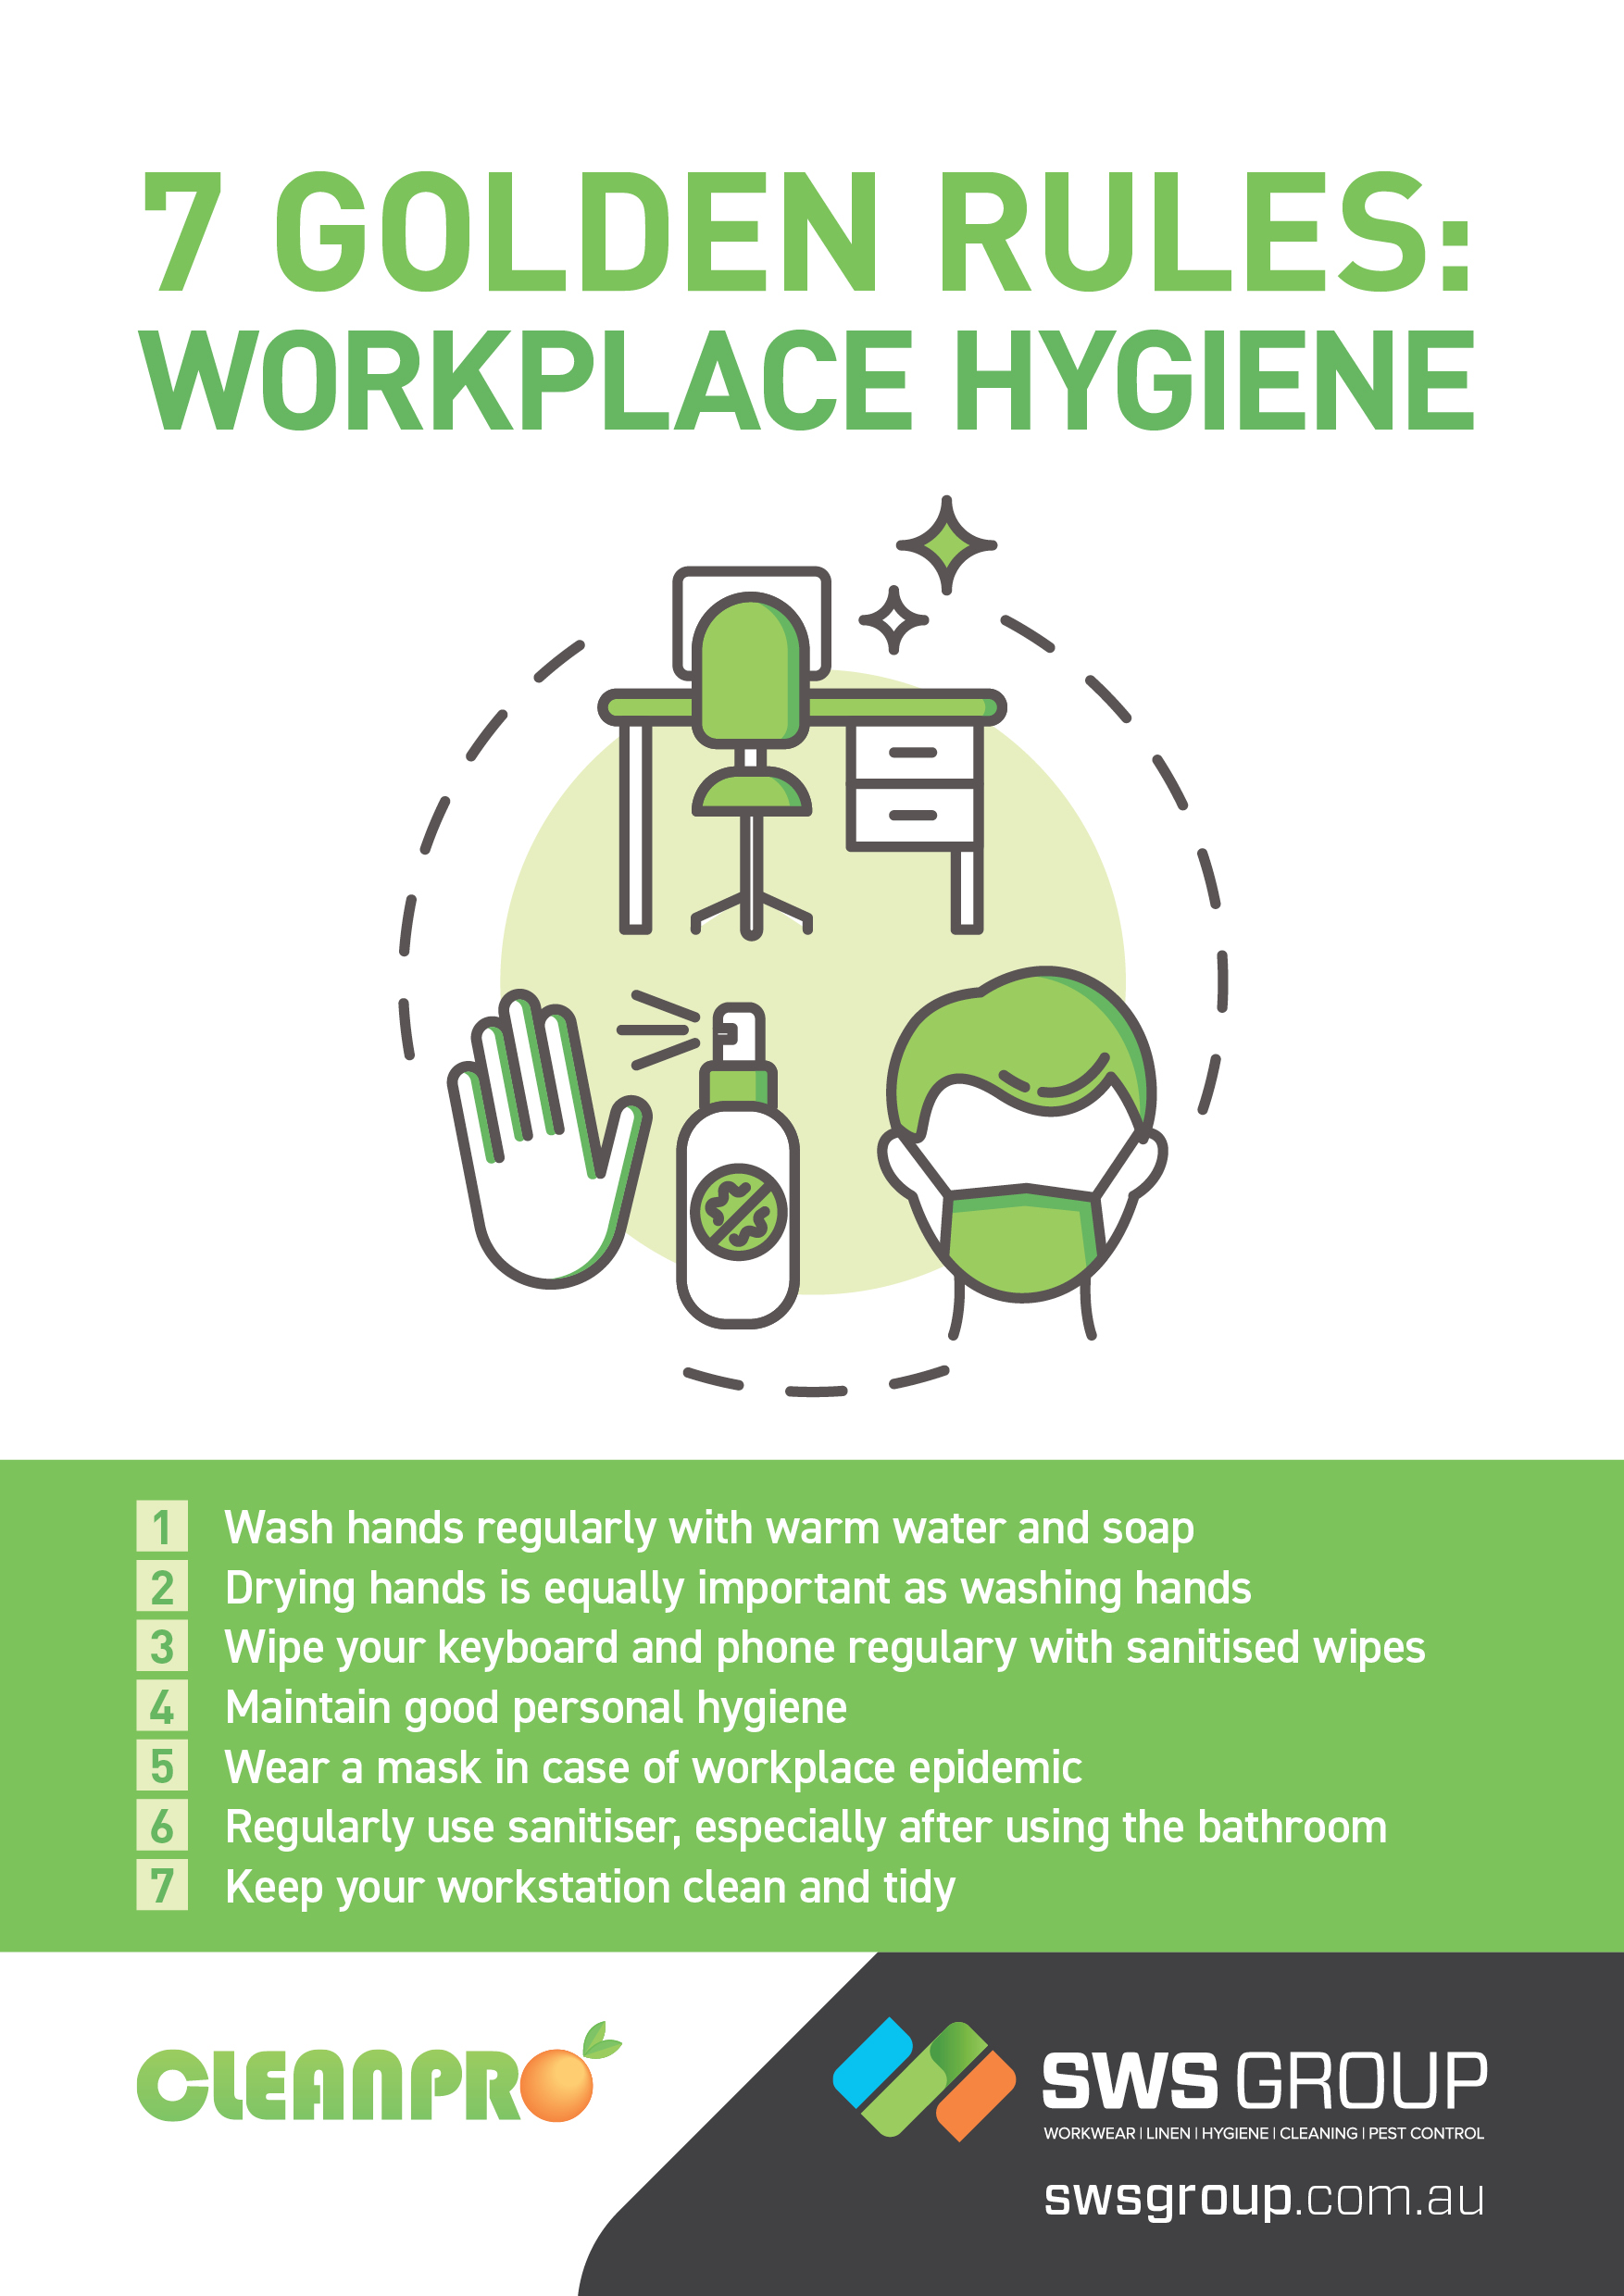 Workplace Hygiene ?width=5262&name=workplace Hygiene 